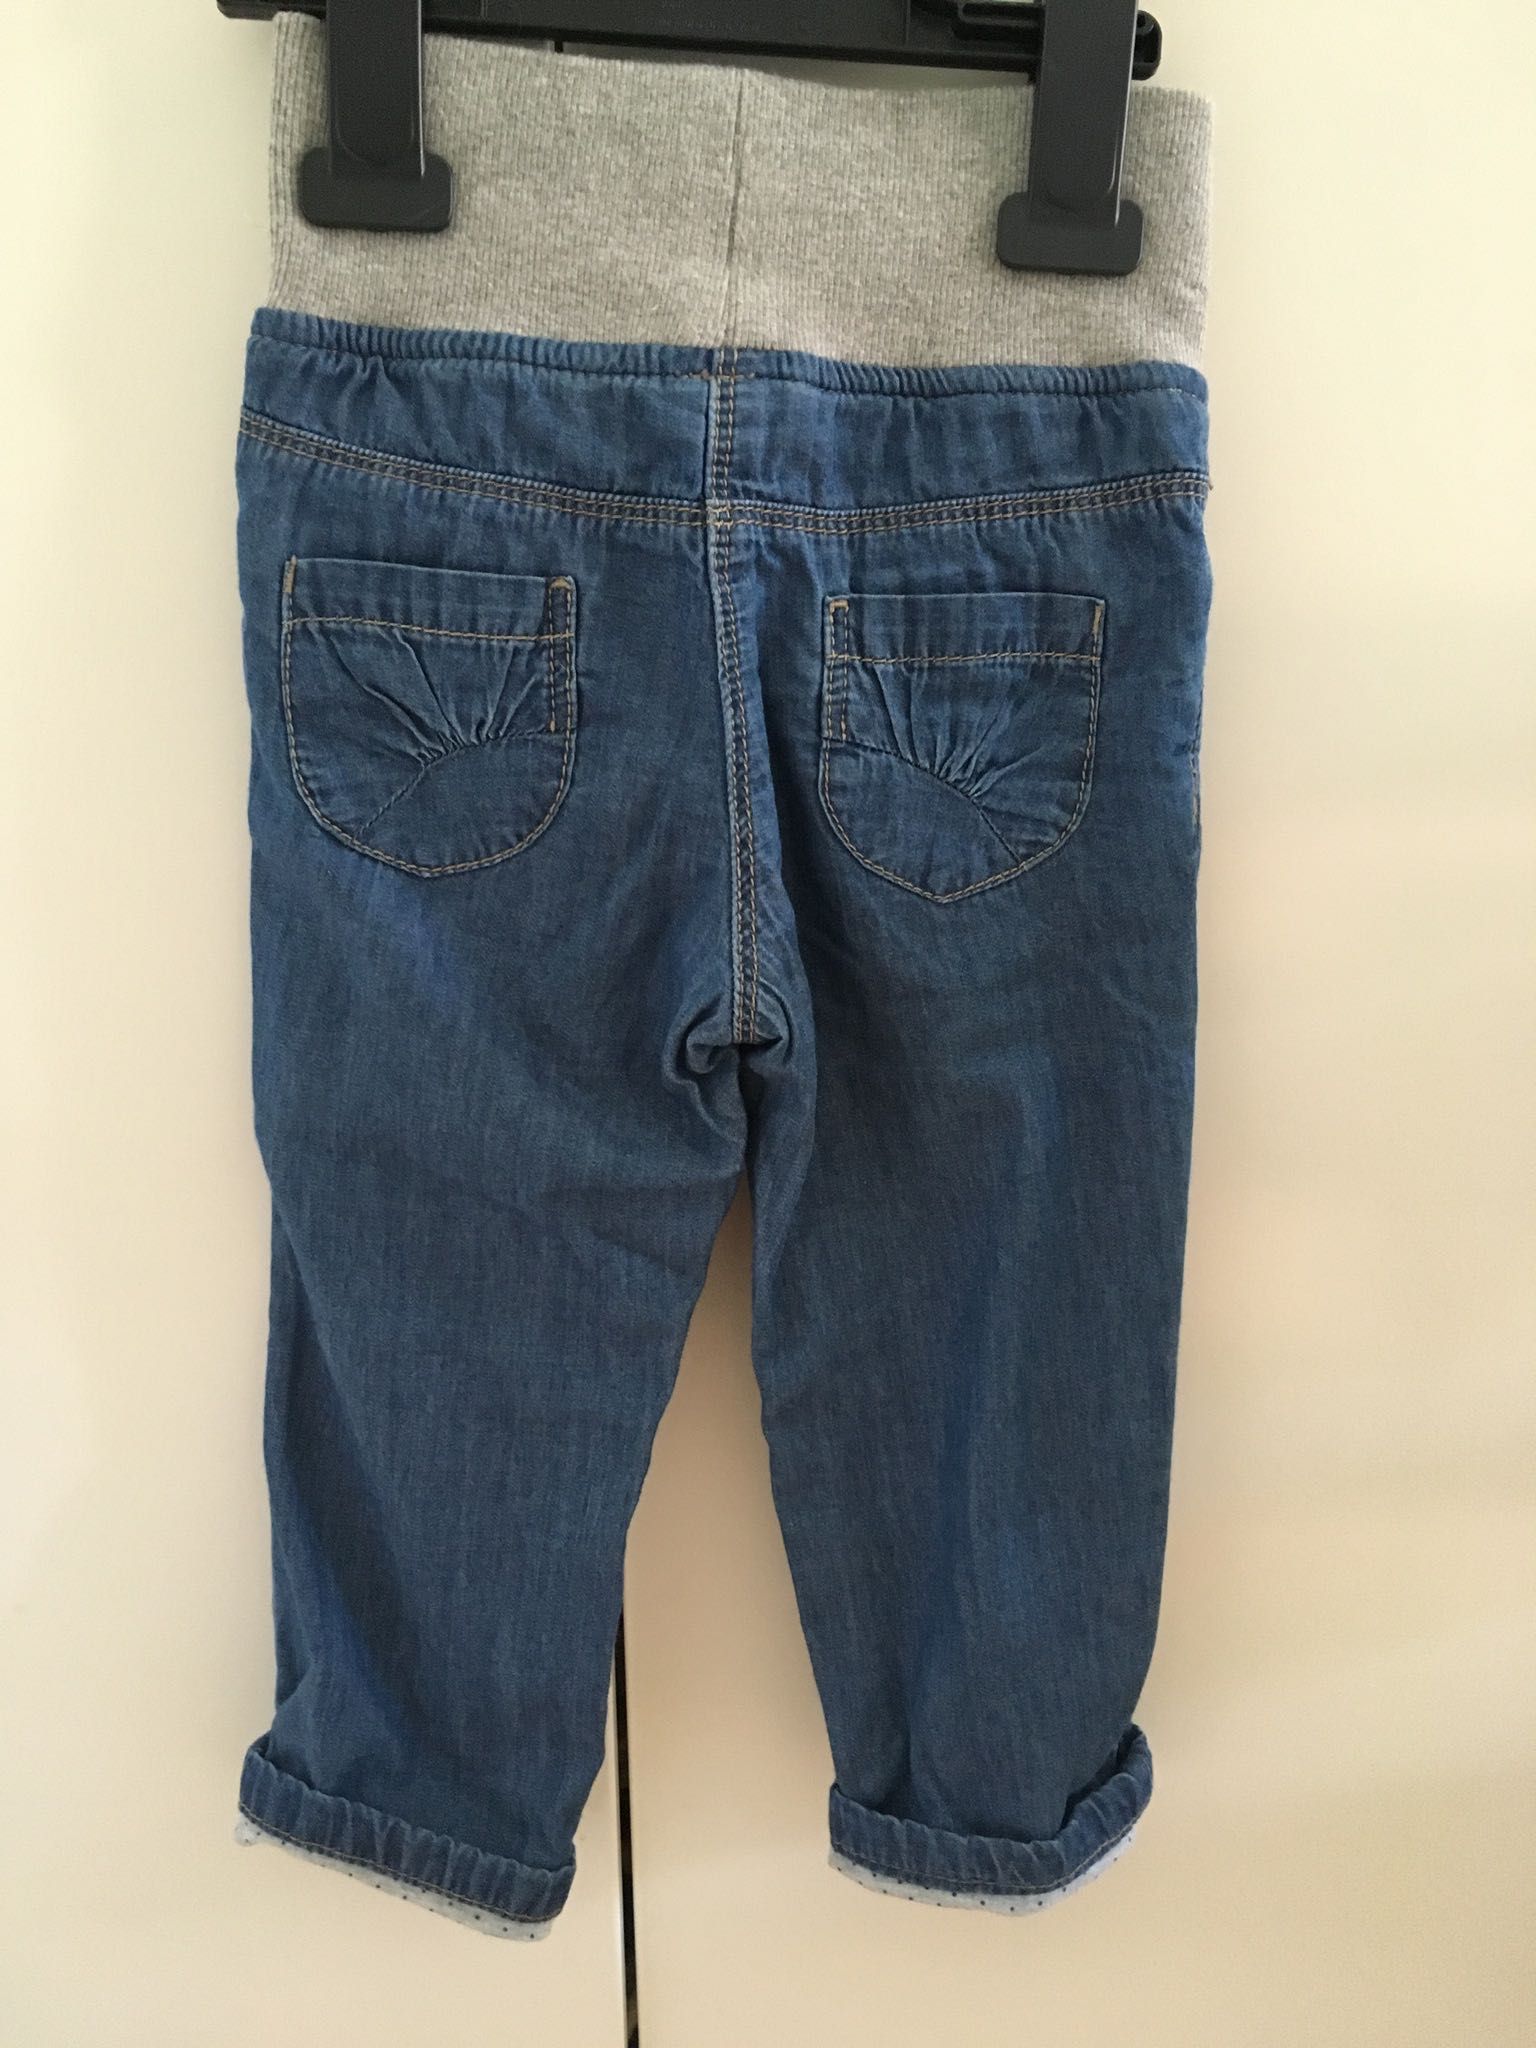 Joggersy, jeansy, spodnie ze ściągaczem, rozmiar 80, nowe C&A.